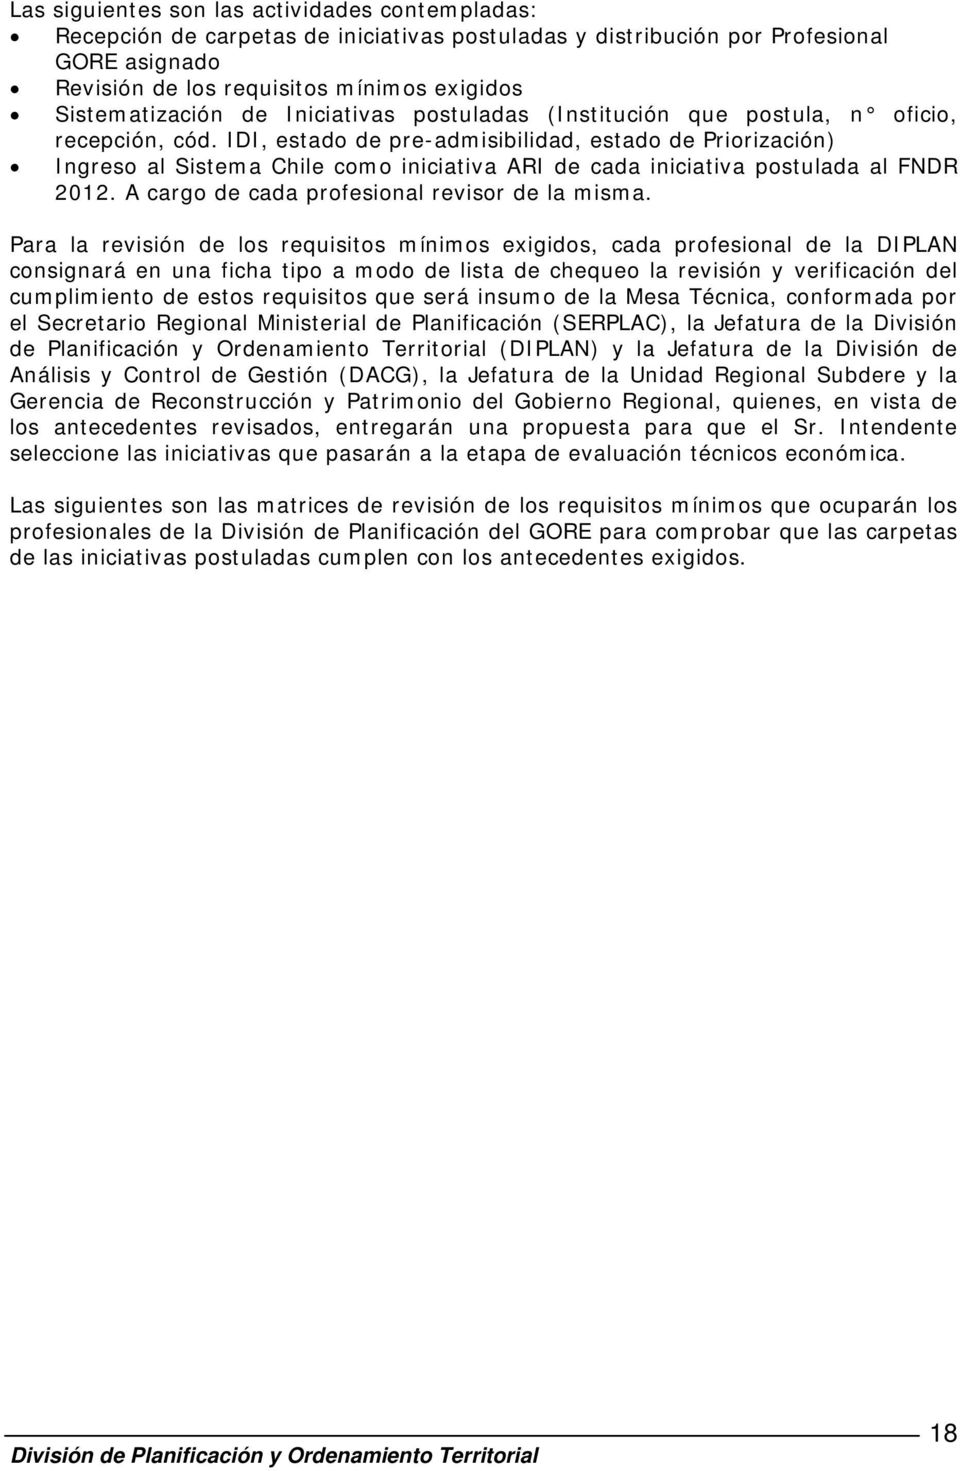 IDI, estado de pre-admisibilidad, estado de Priorización) Ingreso al Sistema Chile como iniciativa ARI de cada iniciativa postulada al FNDR 2012. A cargo de cada profesional revisor de la misma.